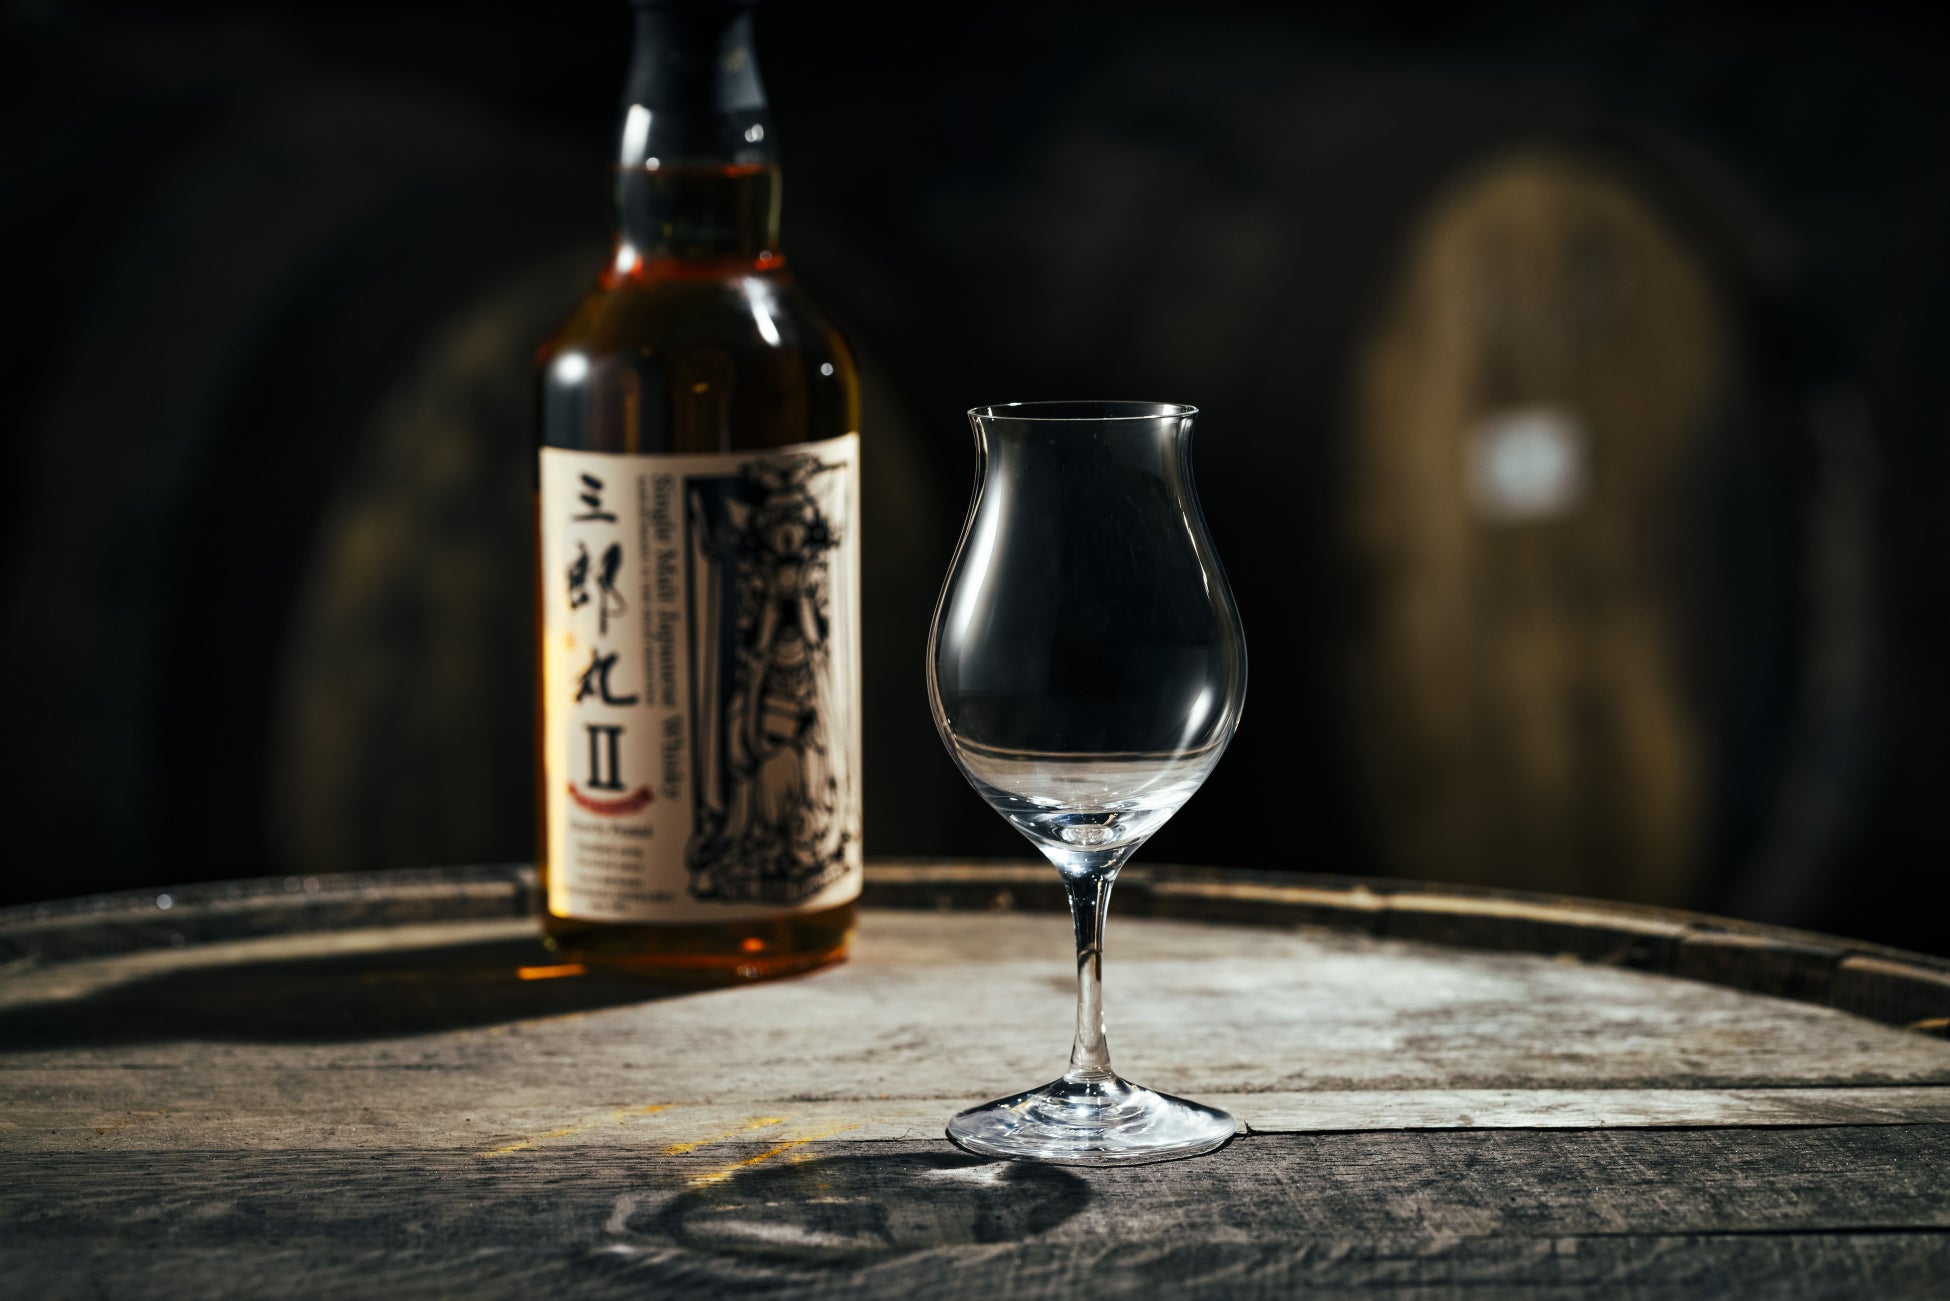 【蒸留所のコンセプトを体現する真のオリジナルグラス開発】三郎丸蒸留所オリジナルのウイスキーグラス「The Ultimate Peat Glass」